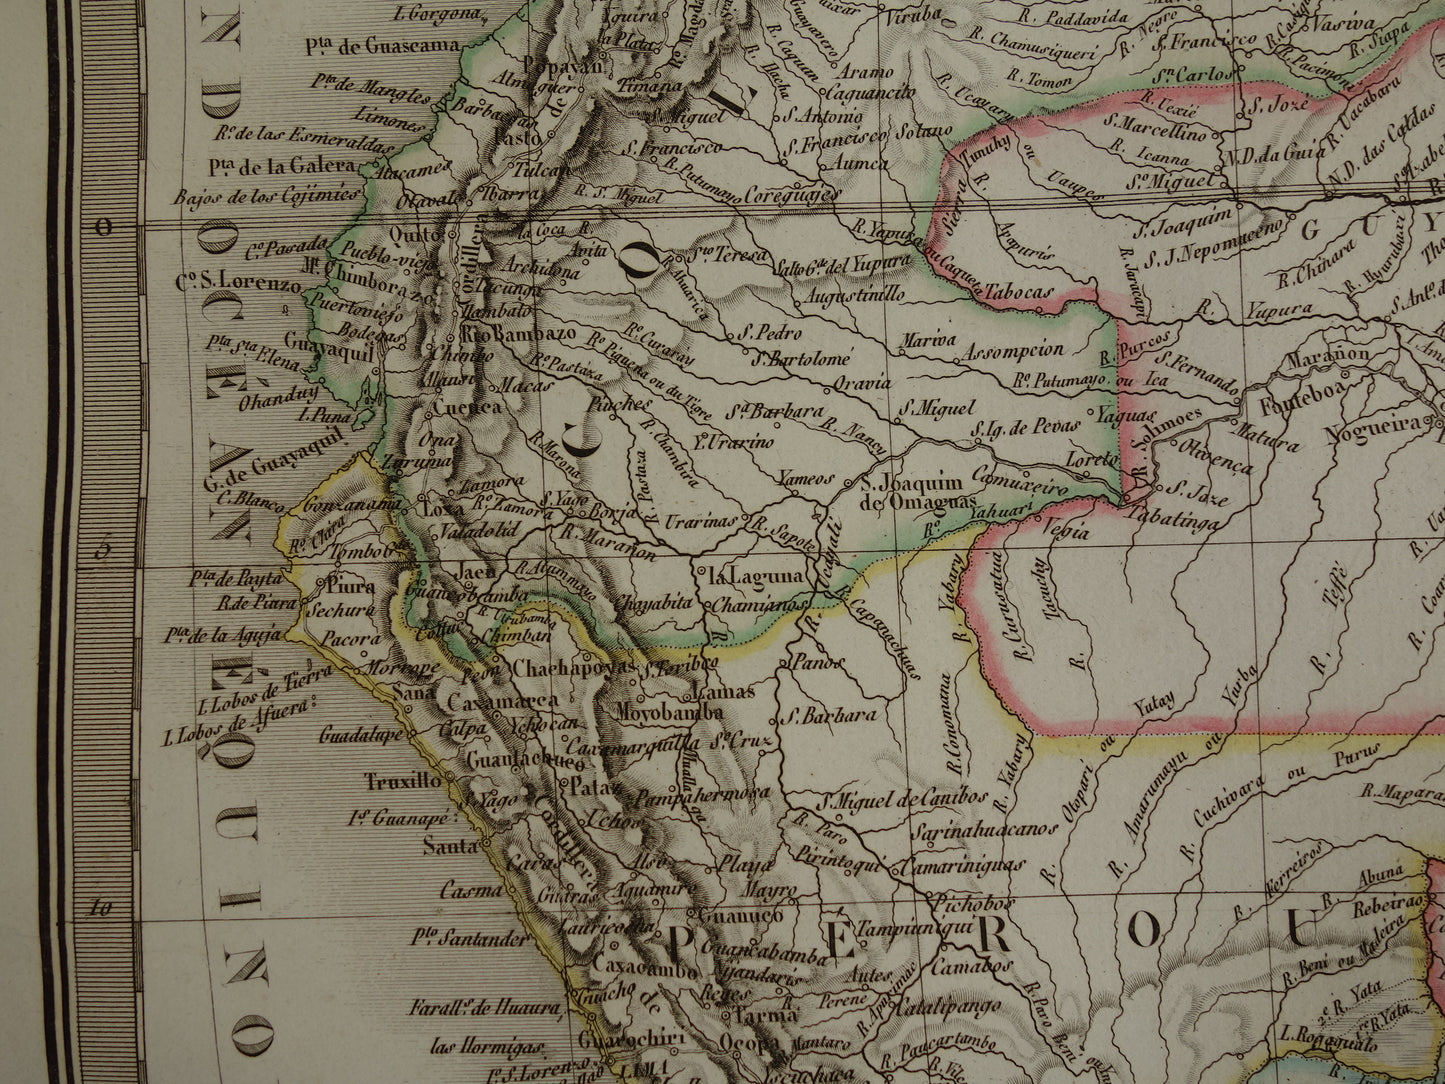 ZUID-AMERIKA Grote vintage landkaart van Zuid-Amerika 1829 oude kaart poster Brazilië Patagonië Chili origineel antiek met jaartal